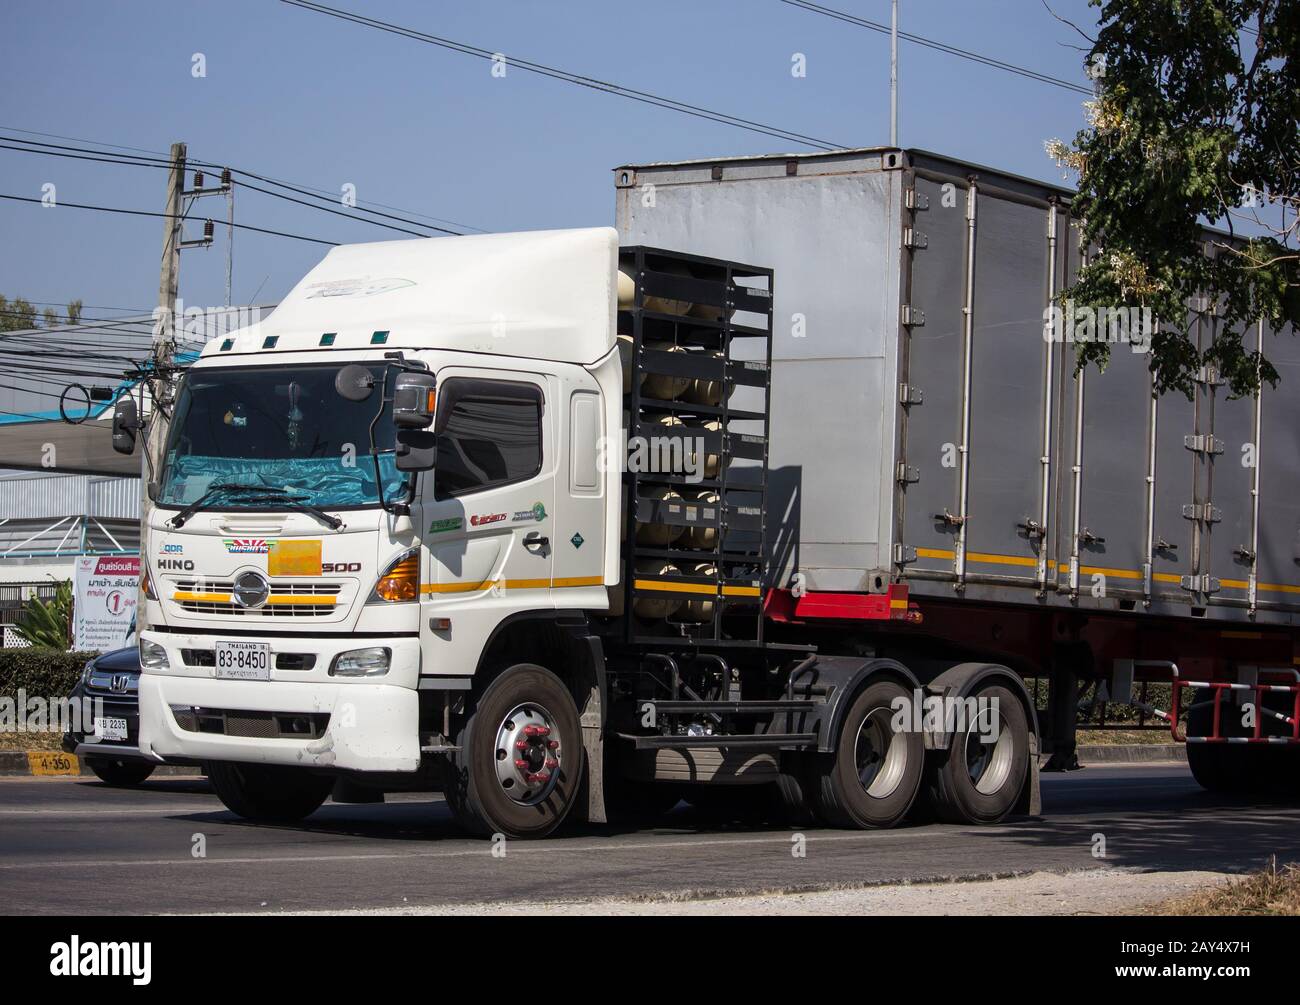 Chiangmai, Thaïlande - 16 Décembre 2019: Camion De Cargaison De Conteneur De Remorque De La Société Santipab. Photo à la route no.1014 à environ 8 km du centre-ville, thaïlande Banque D'Images